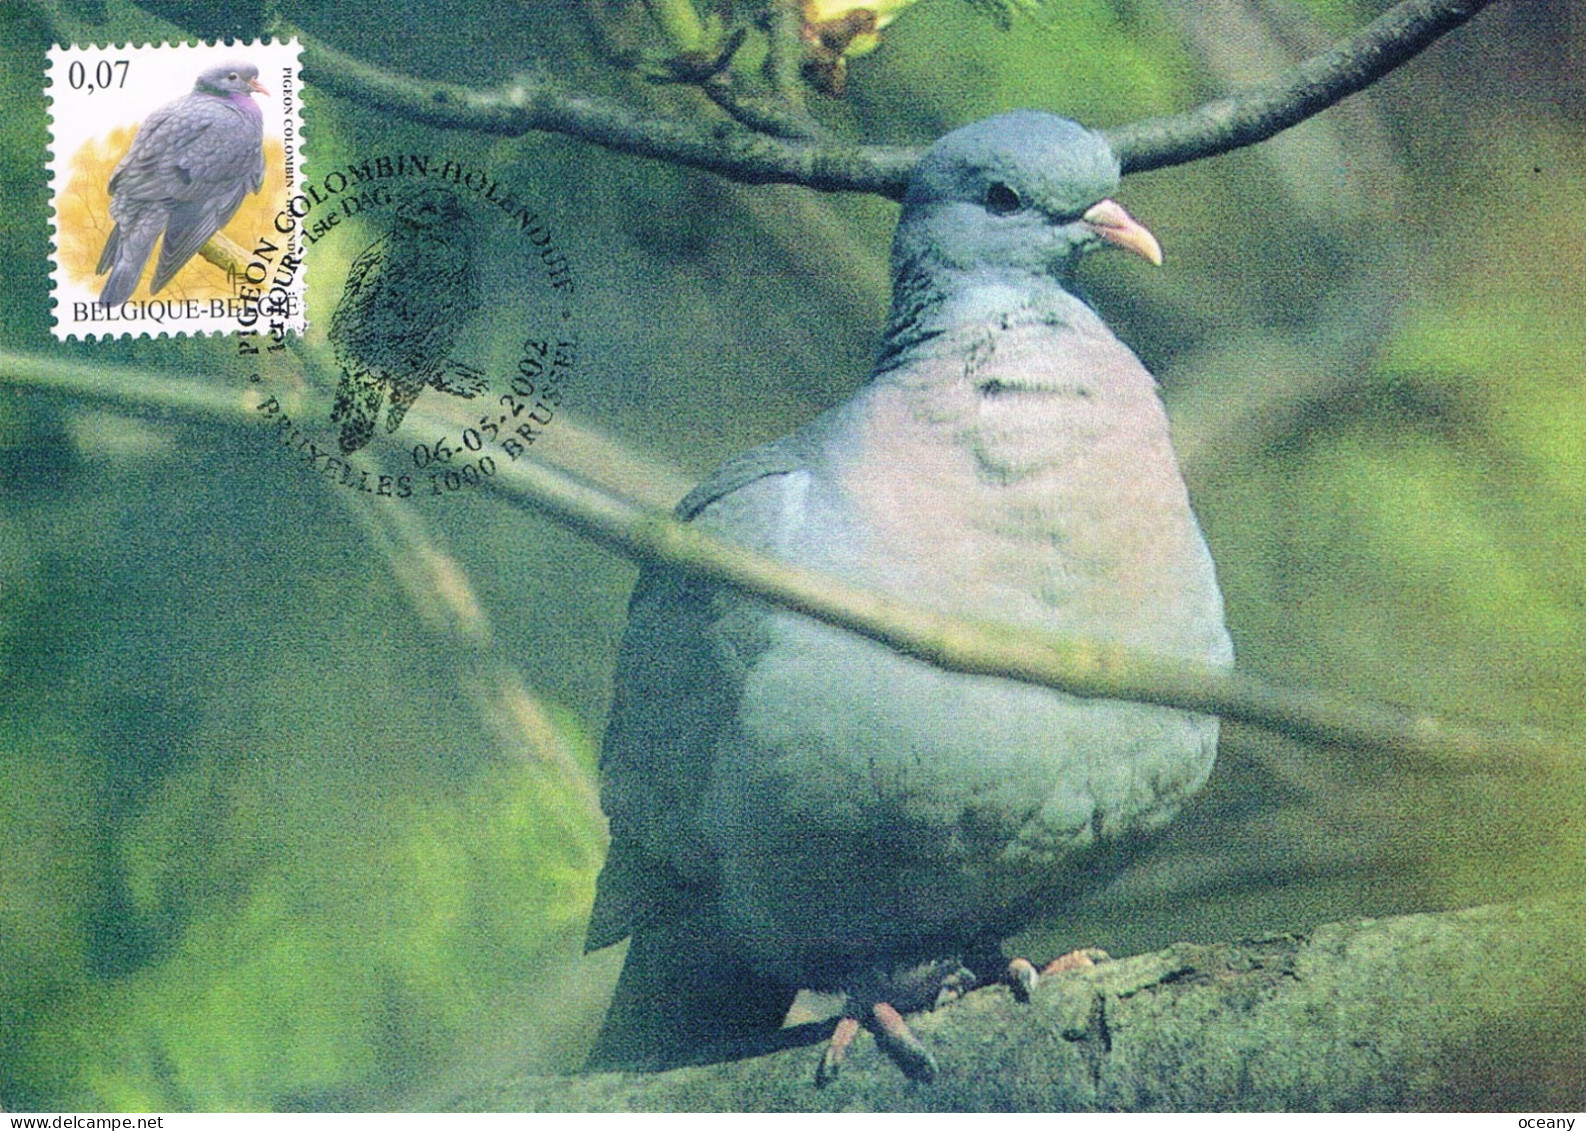 Belgique - Oiseaux : Pigeon Colombin CM Max 3069 (année 2002) - 2001-2010